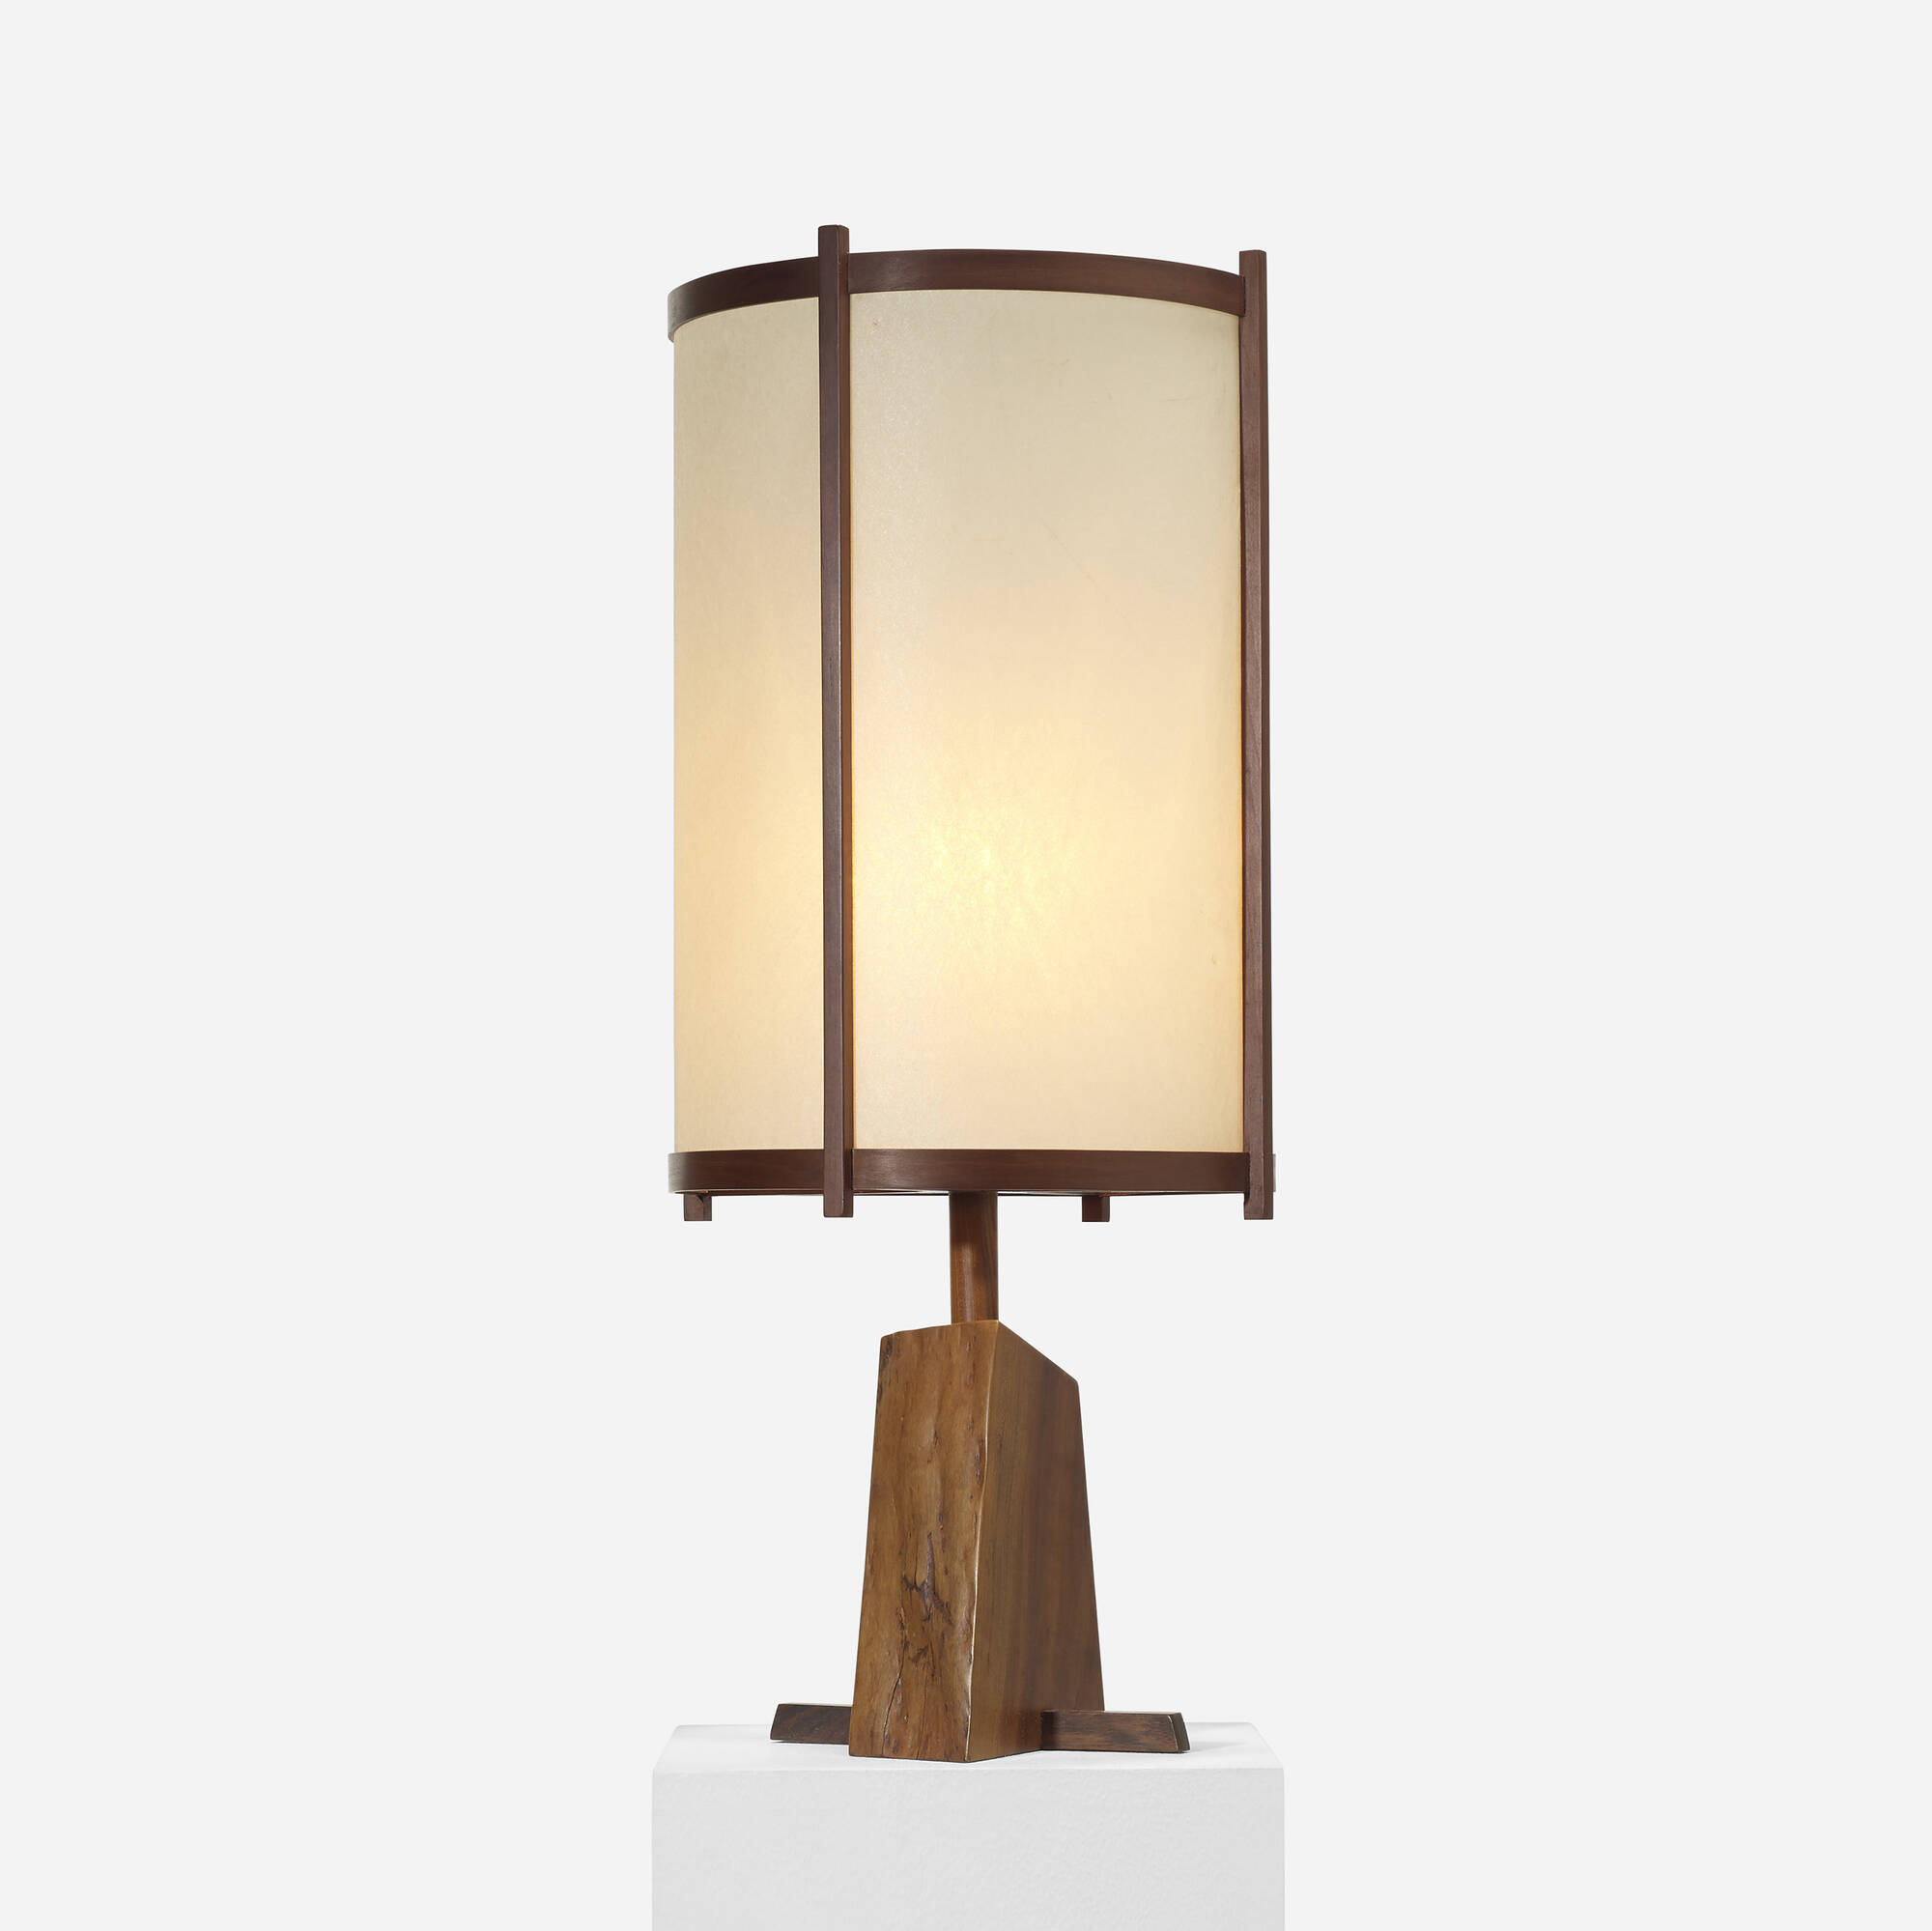 155: GEORGE NAKASHIMA, table lamp